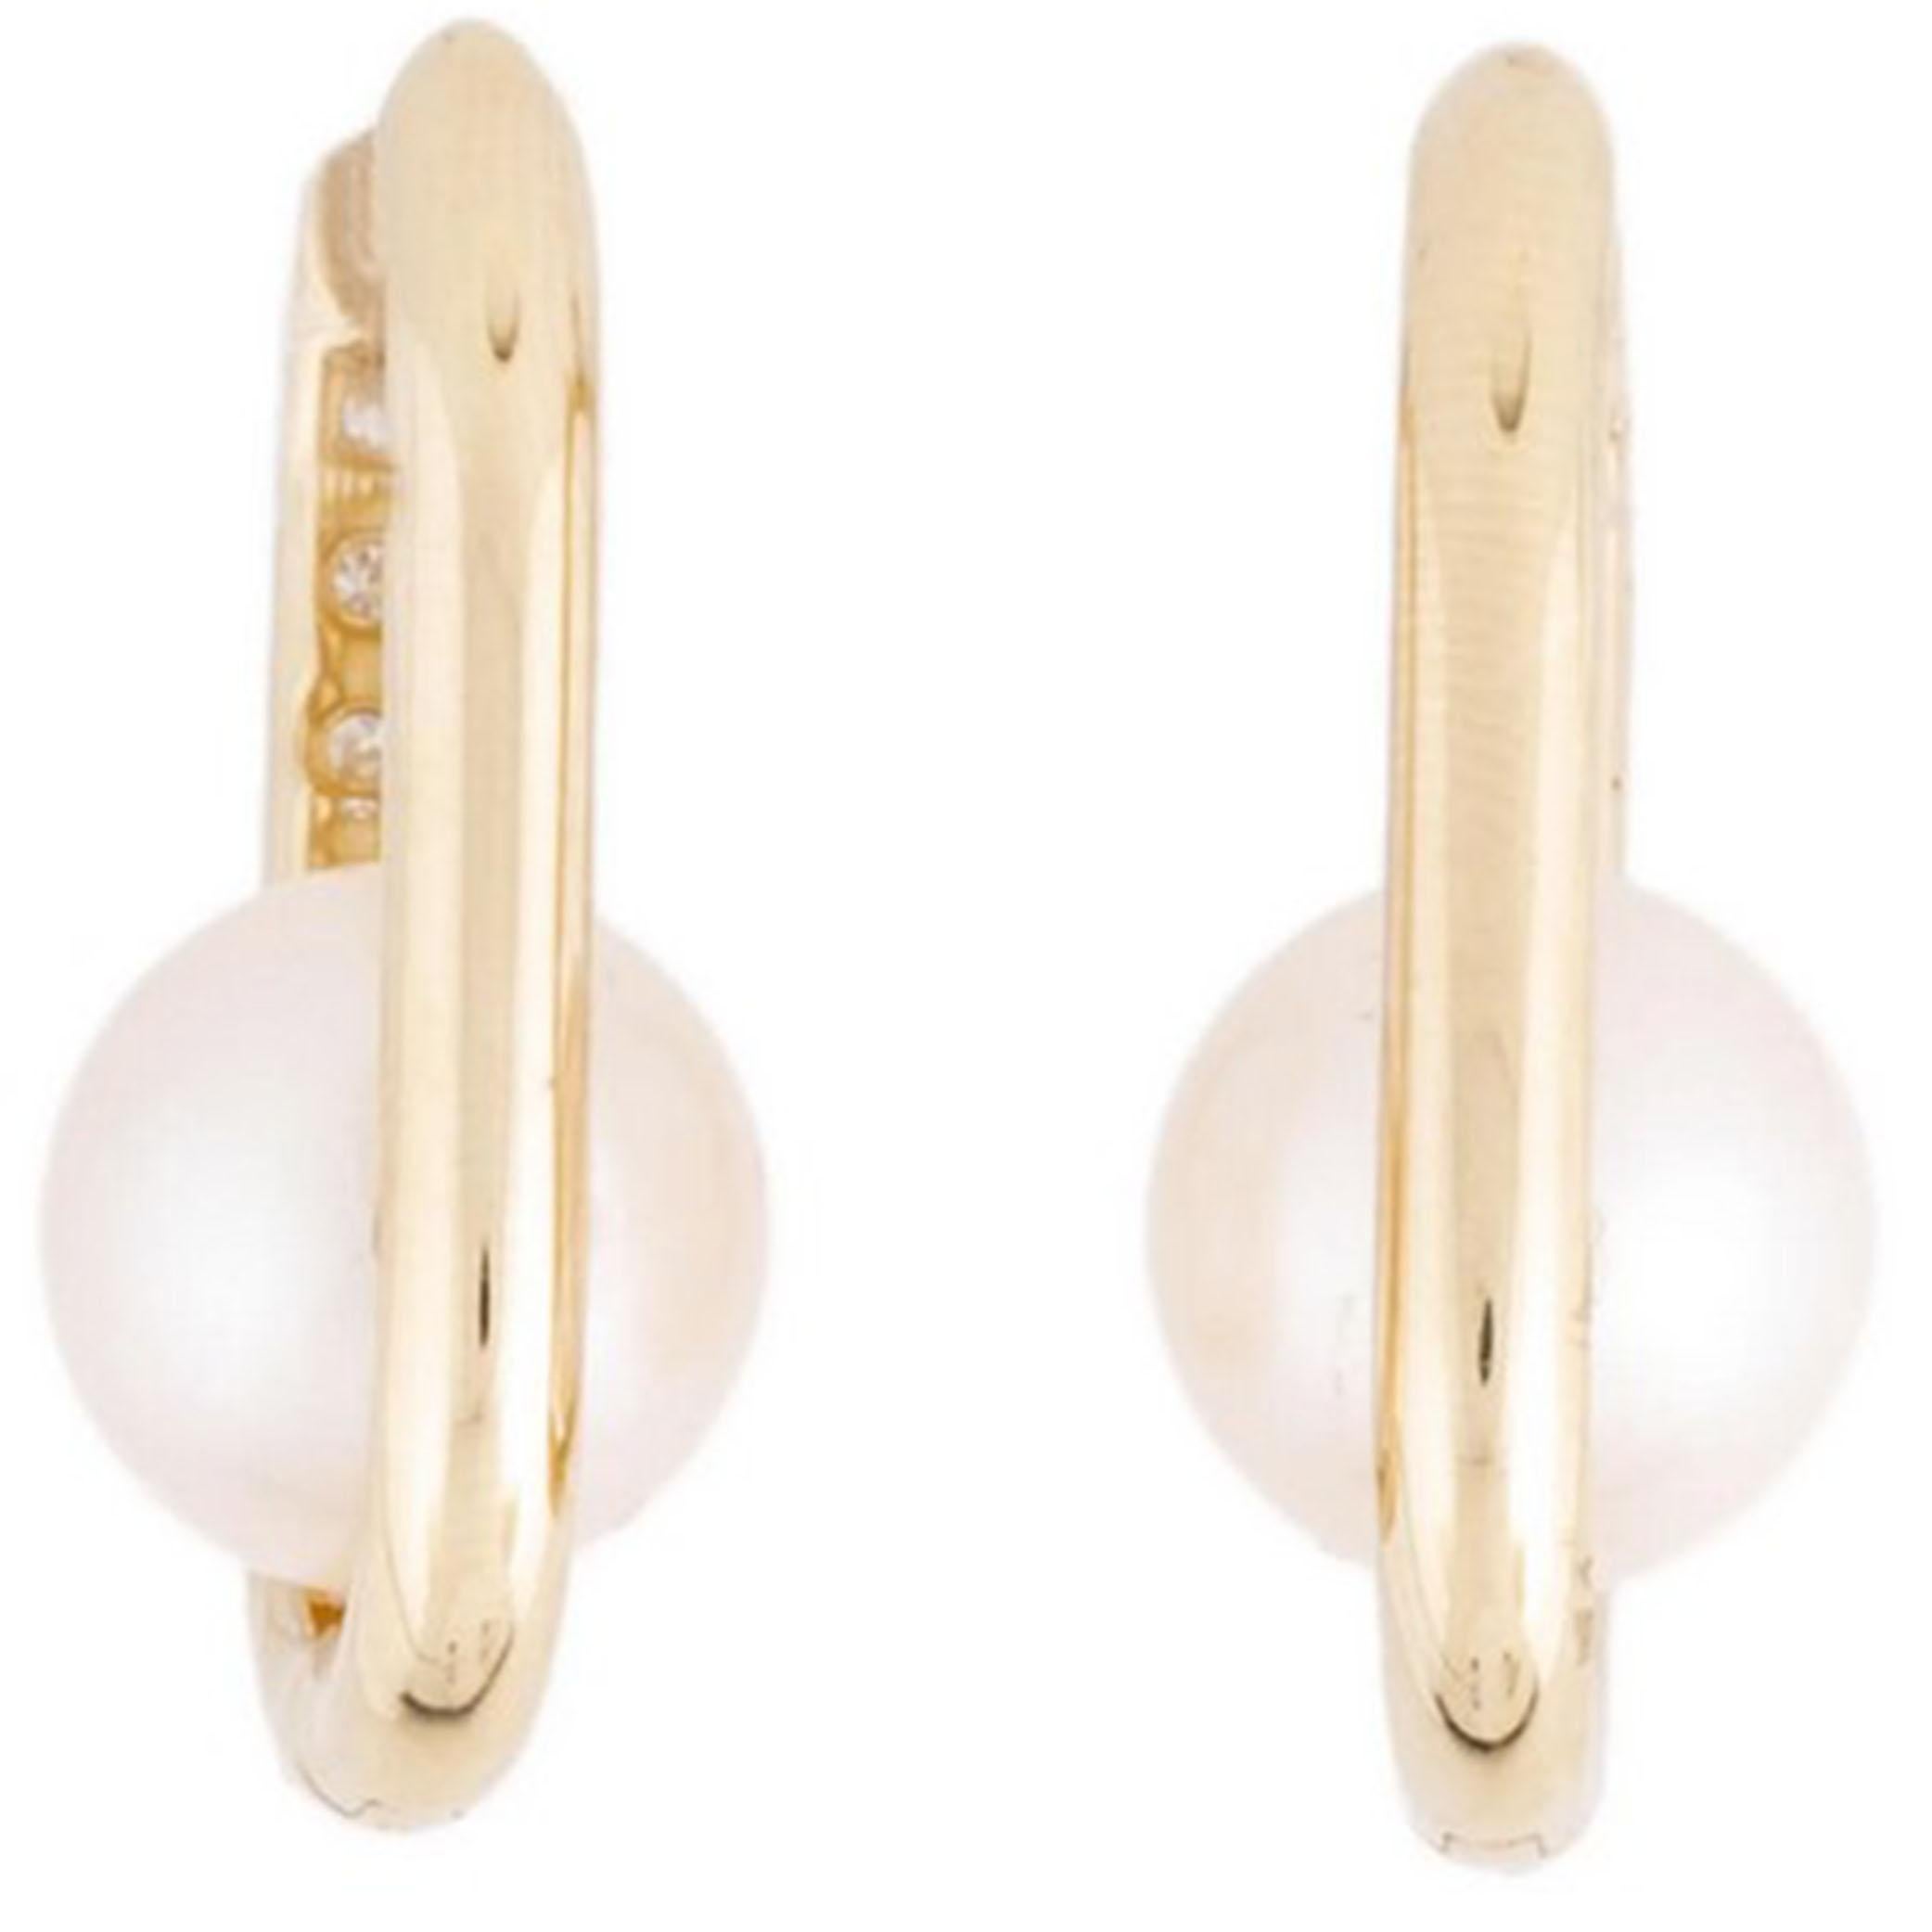 Origine : Japon Japon
Type de perle : Perles Akoya
Taille de la perle : 8,5 - 9,0 MM de diamètre
Perle Couleur : Blanc
Forme de la perle : Ronde 
Surface de la perle : AAA sans défaut
Éclat de la perle : Gemme AAA
Nacre de perle : Haut
Diamant :